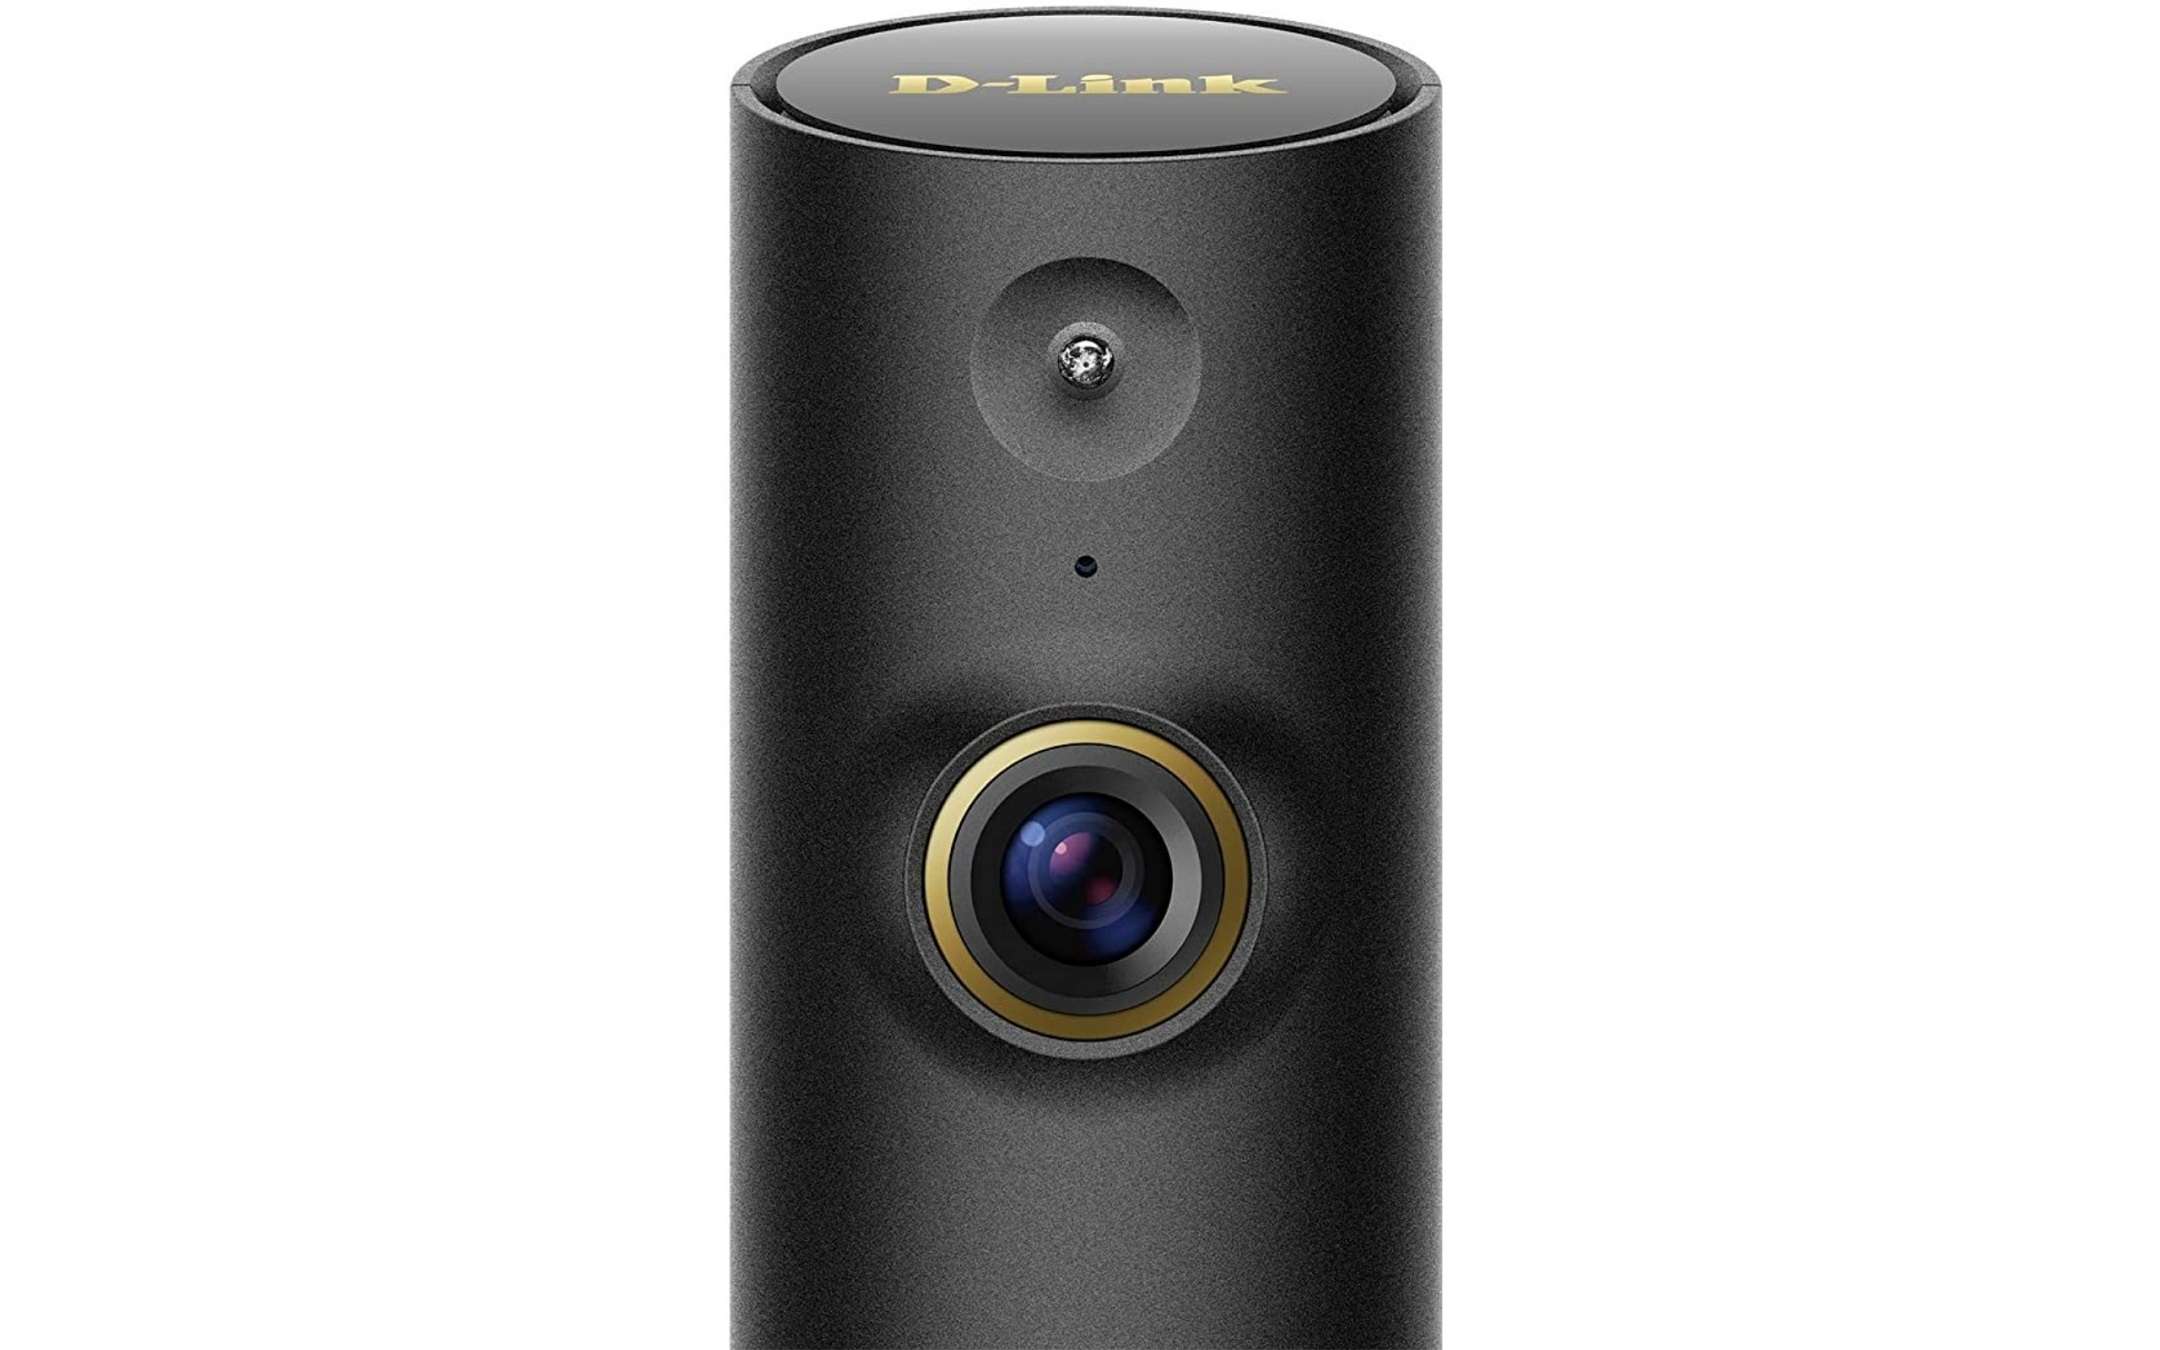 Mini telecamera D-Link per la sicurezza domestica a soli 39€